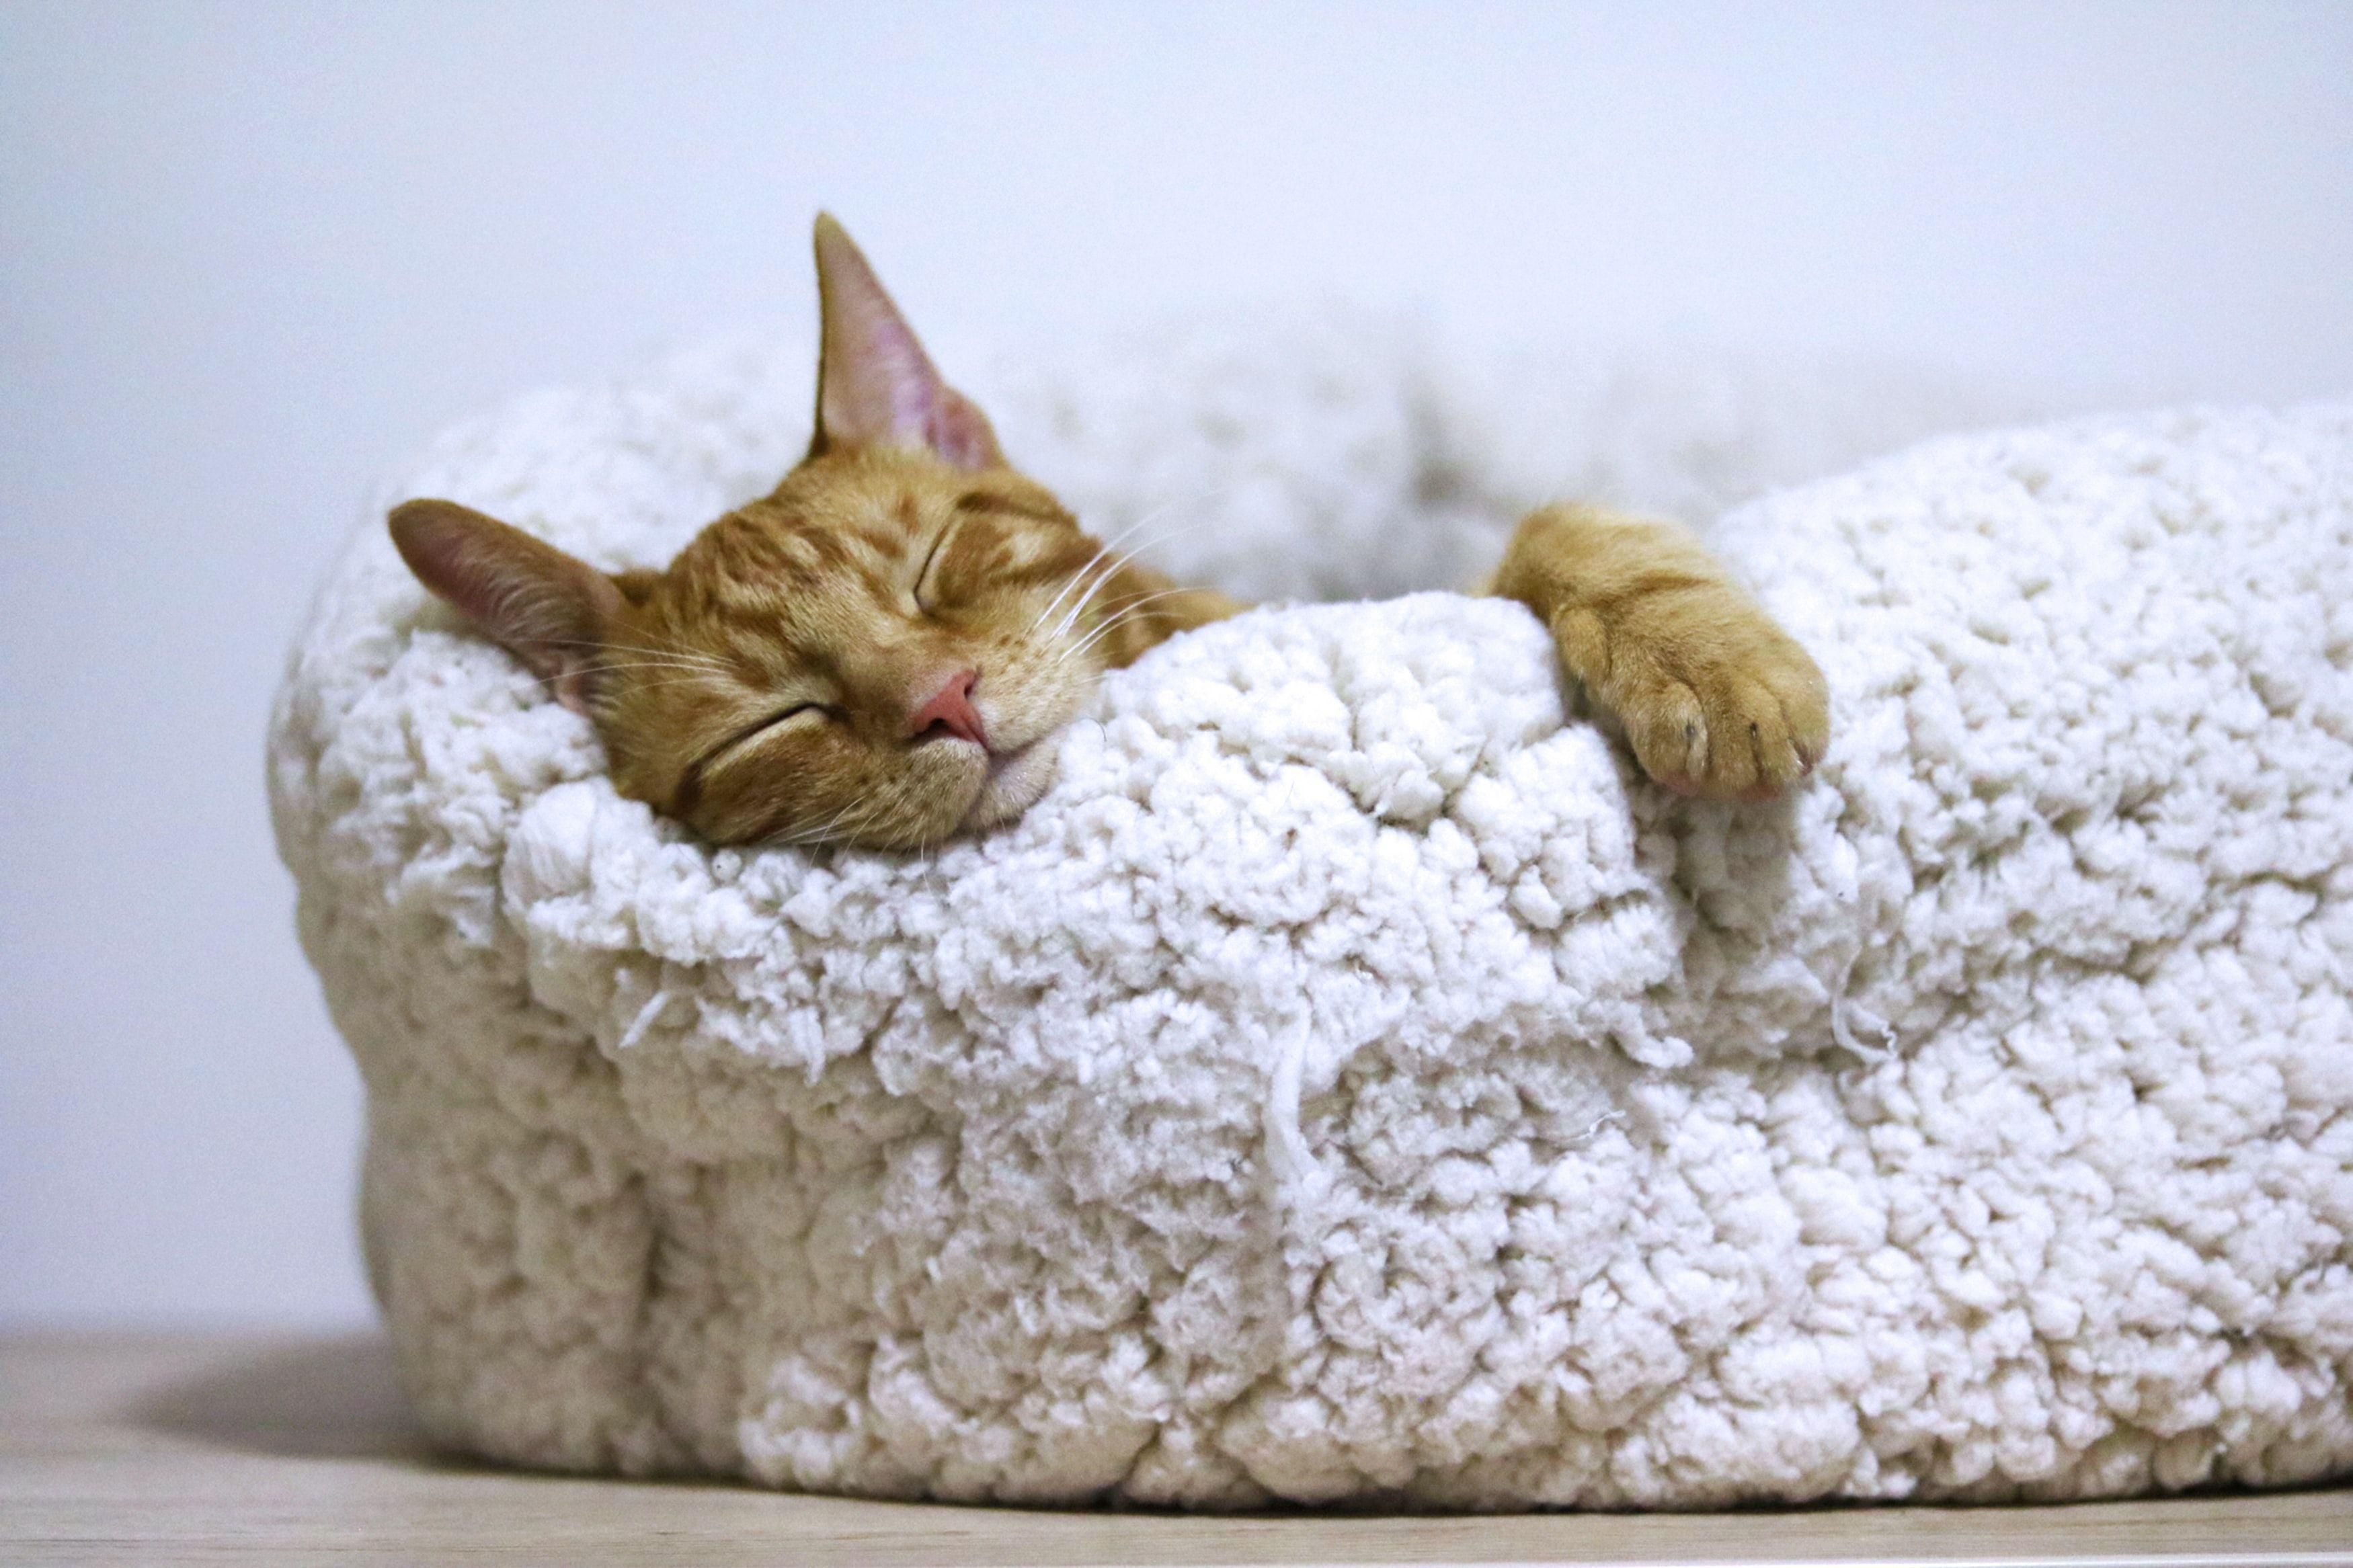 Vörös macska mancsát lógatva alszik egy puha macskaágyban